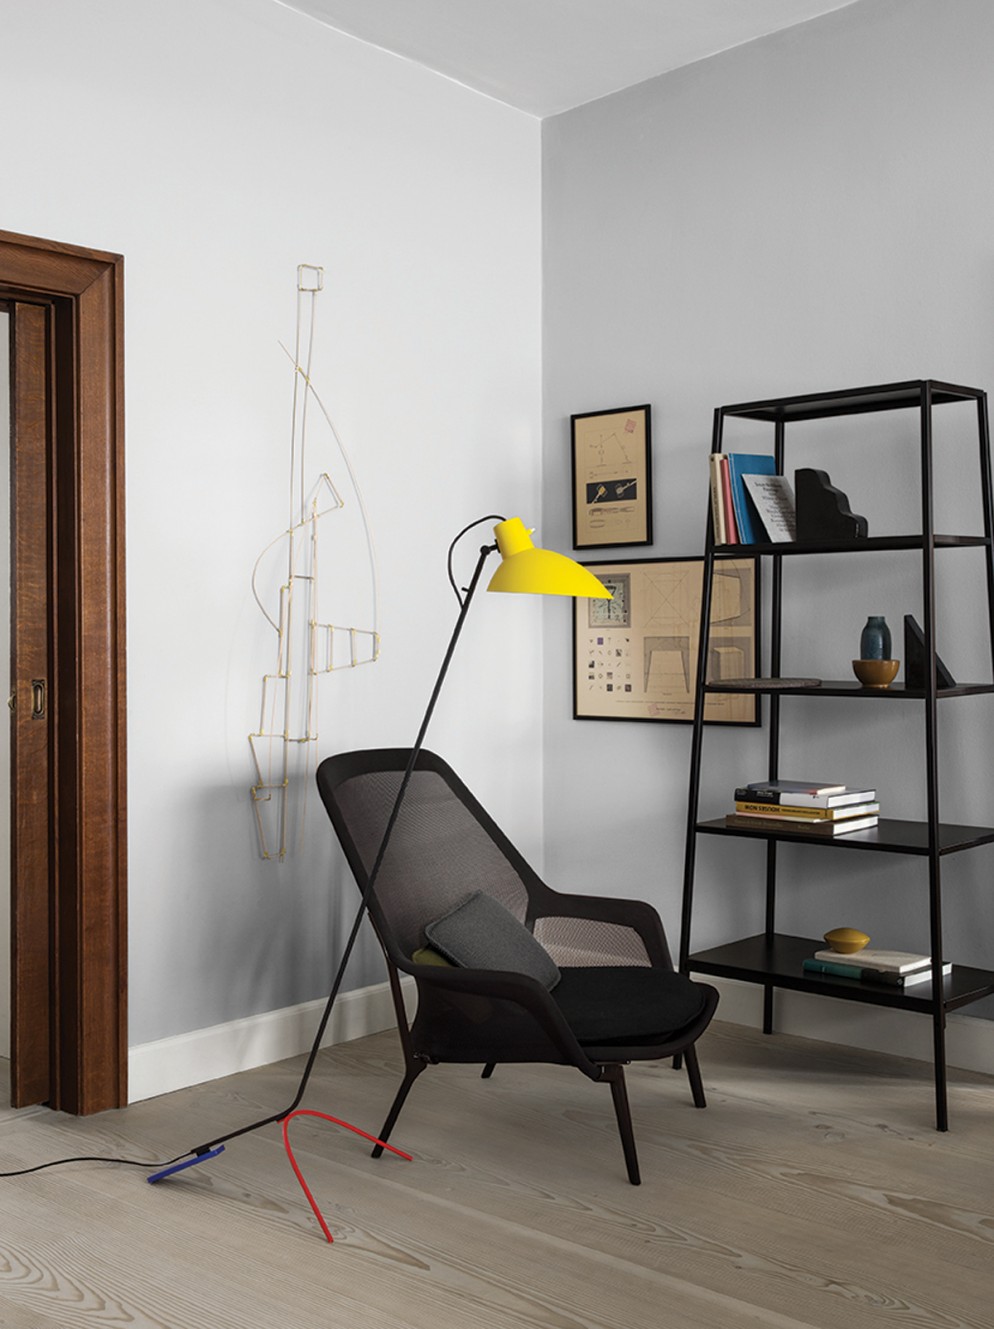 Astep-VV-Cinquanta-Floor-Livingroom-Mondrian-72dpi